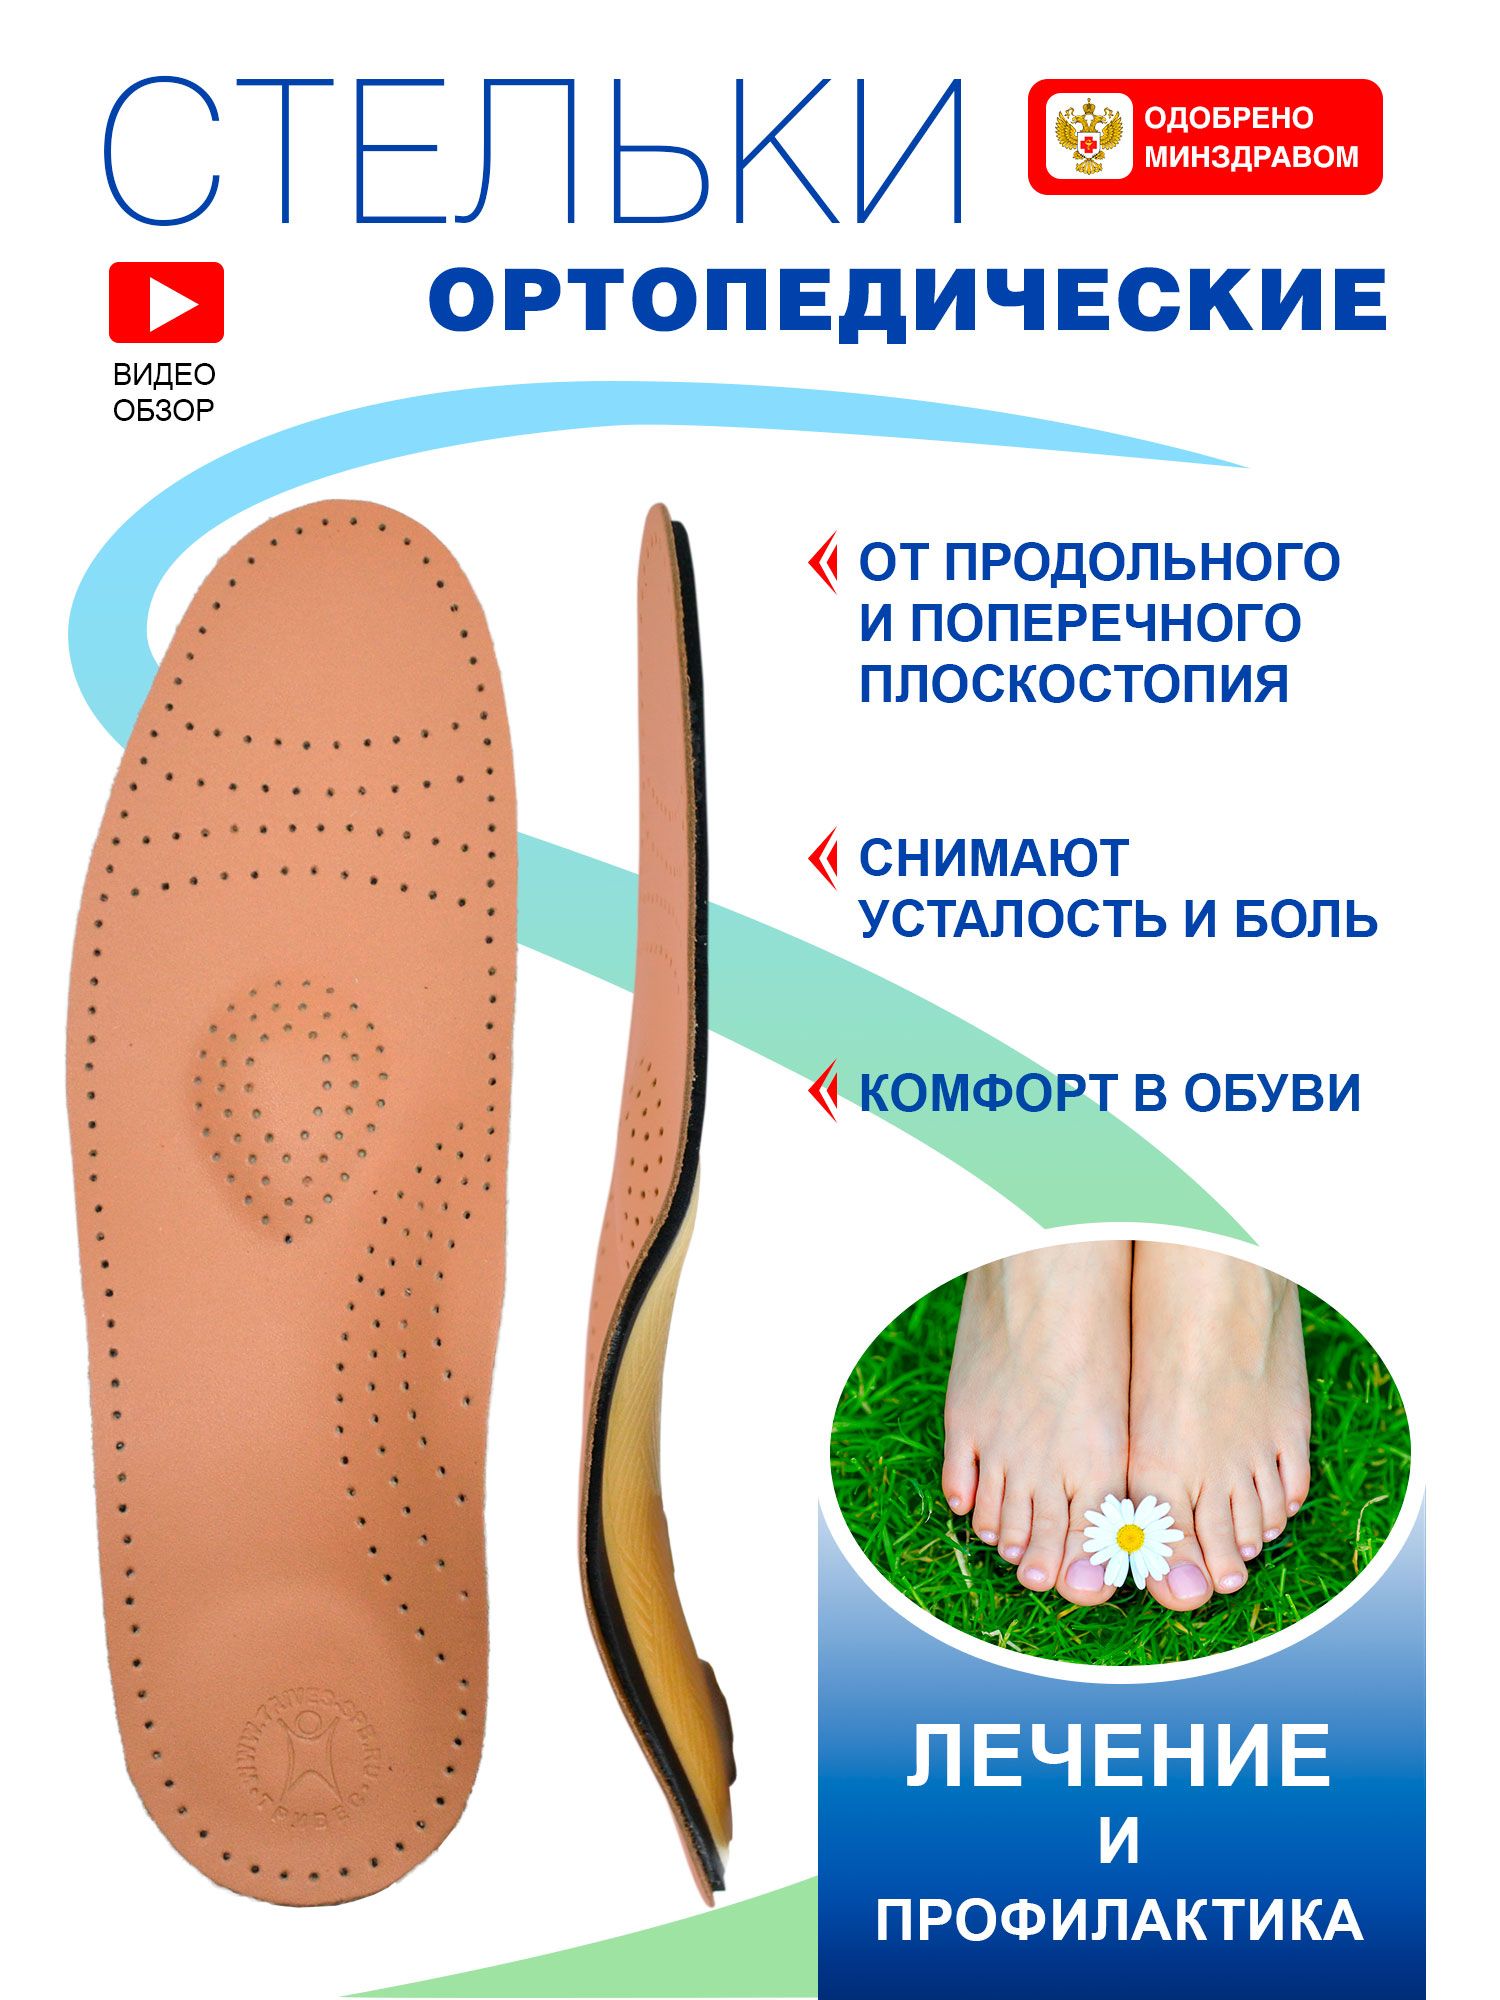 Ортопедические стельки при продольном и поперечном плоскостопии